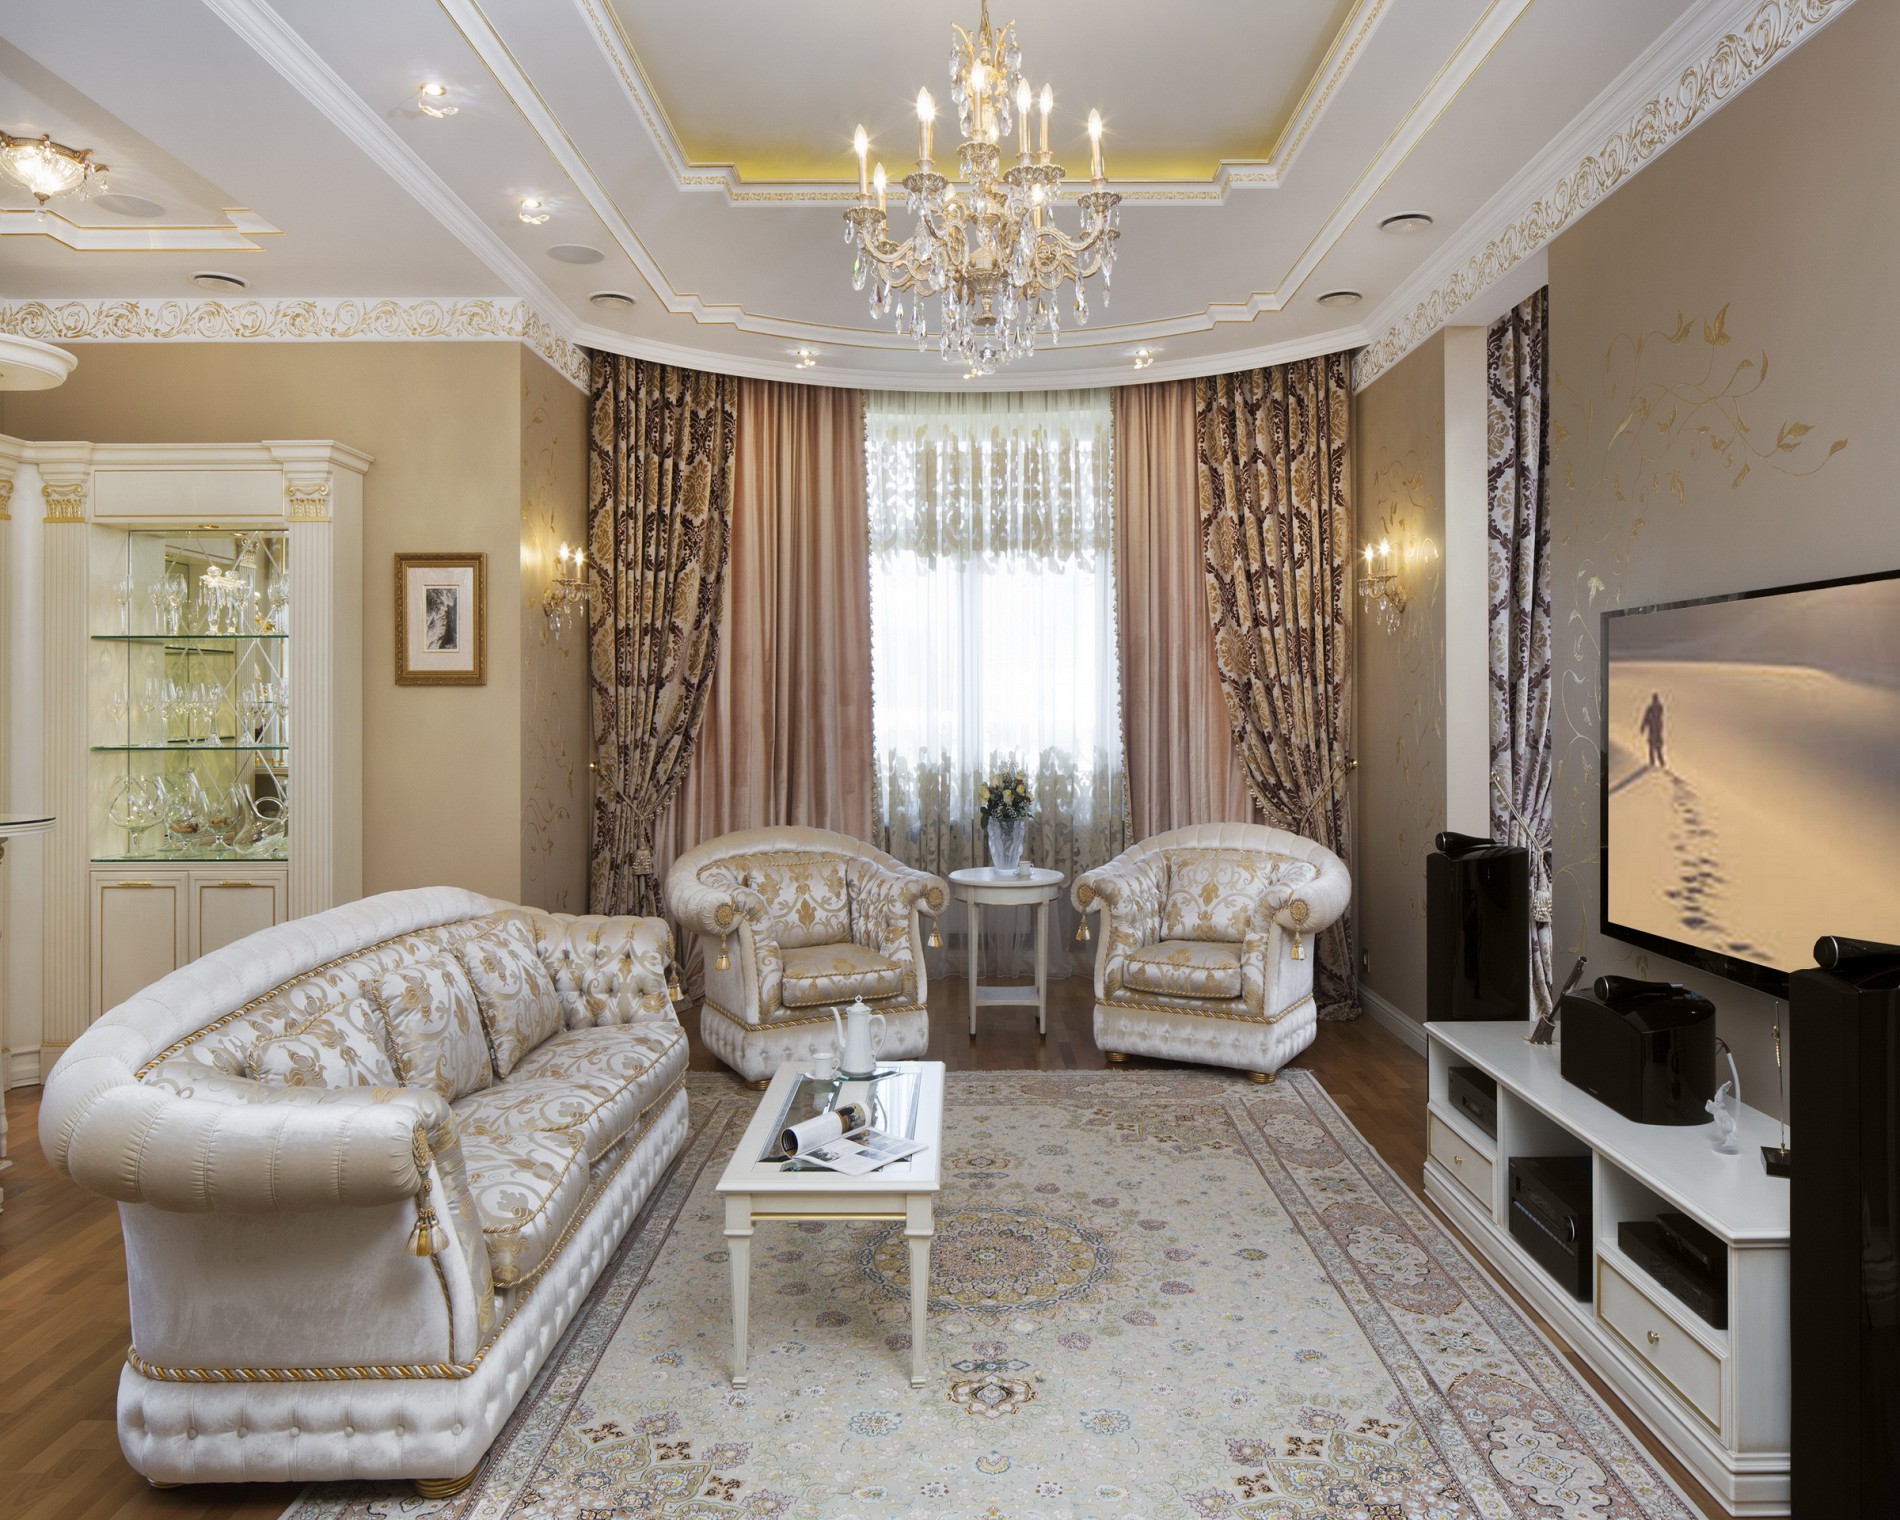 Элитный интерьер гостинойв классическом стиле